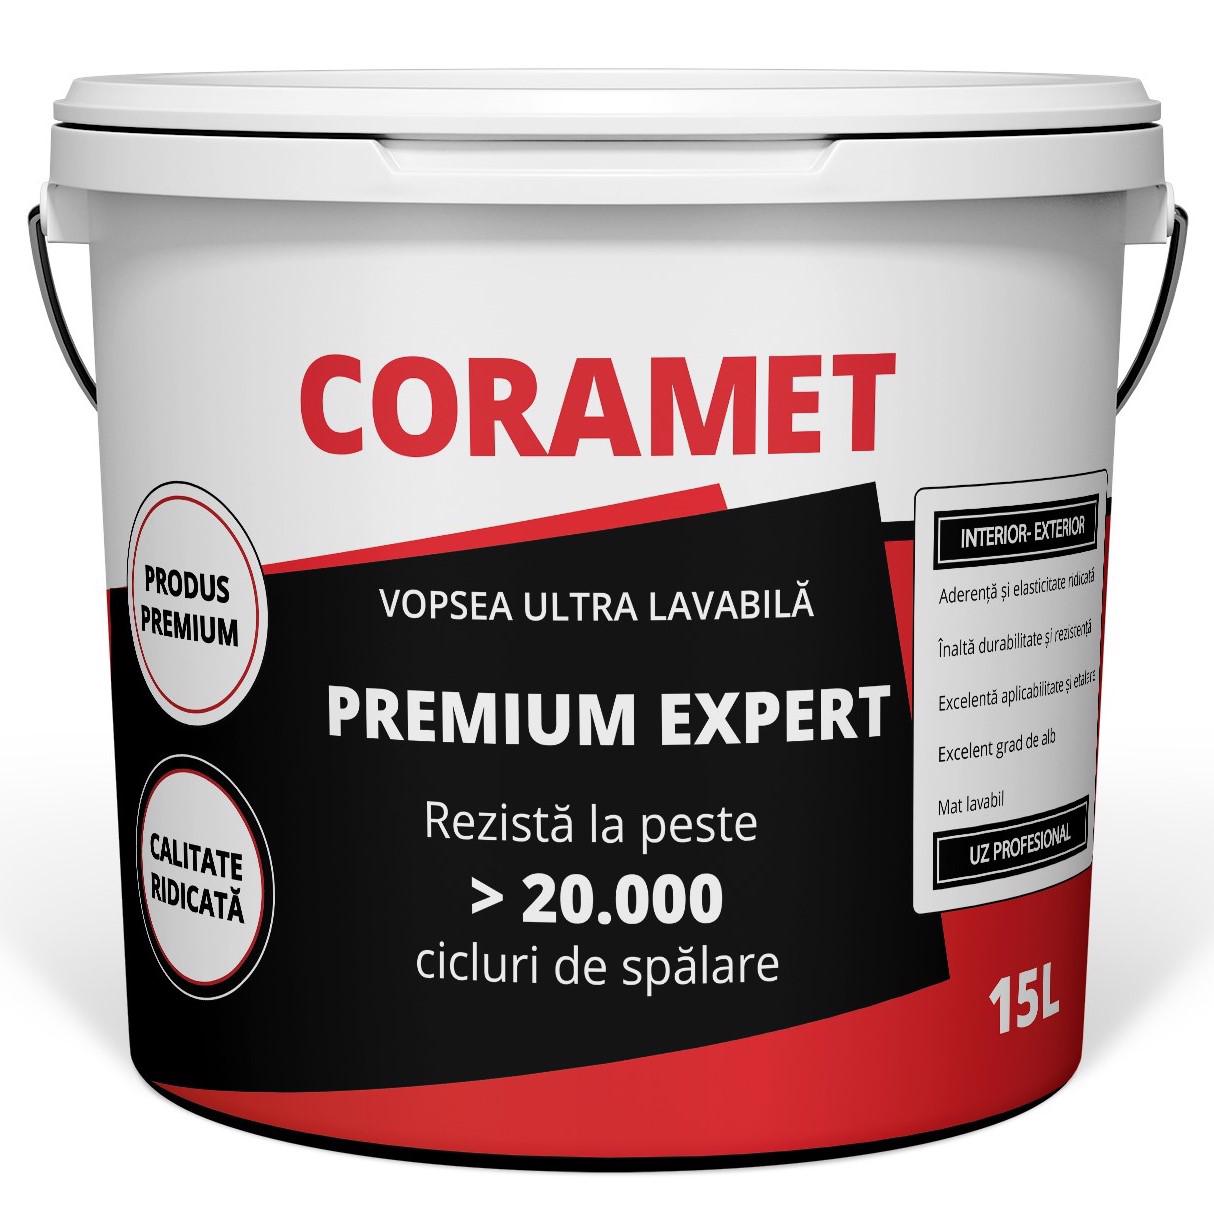 Coramet Premium Vopsea Lavabila